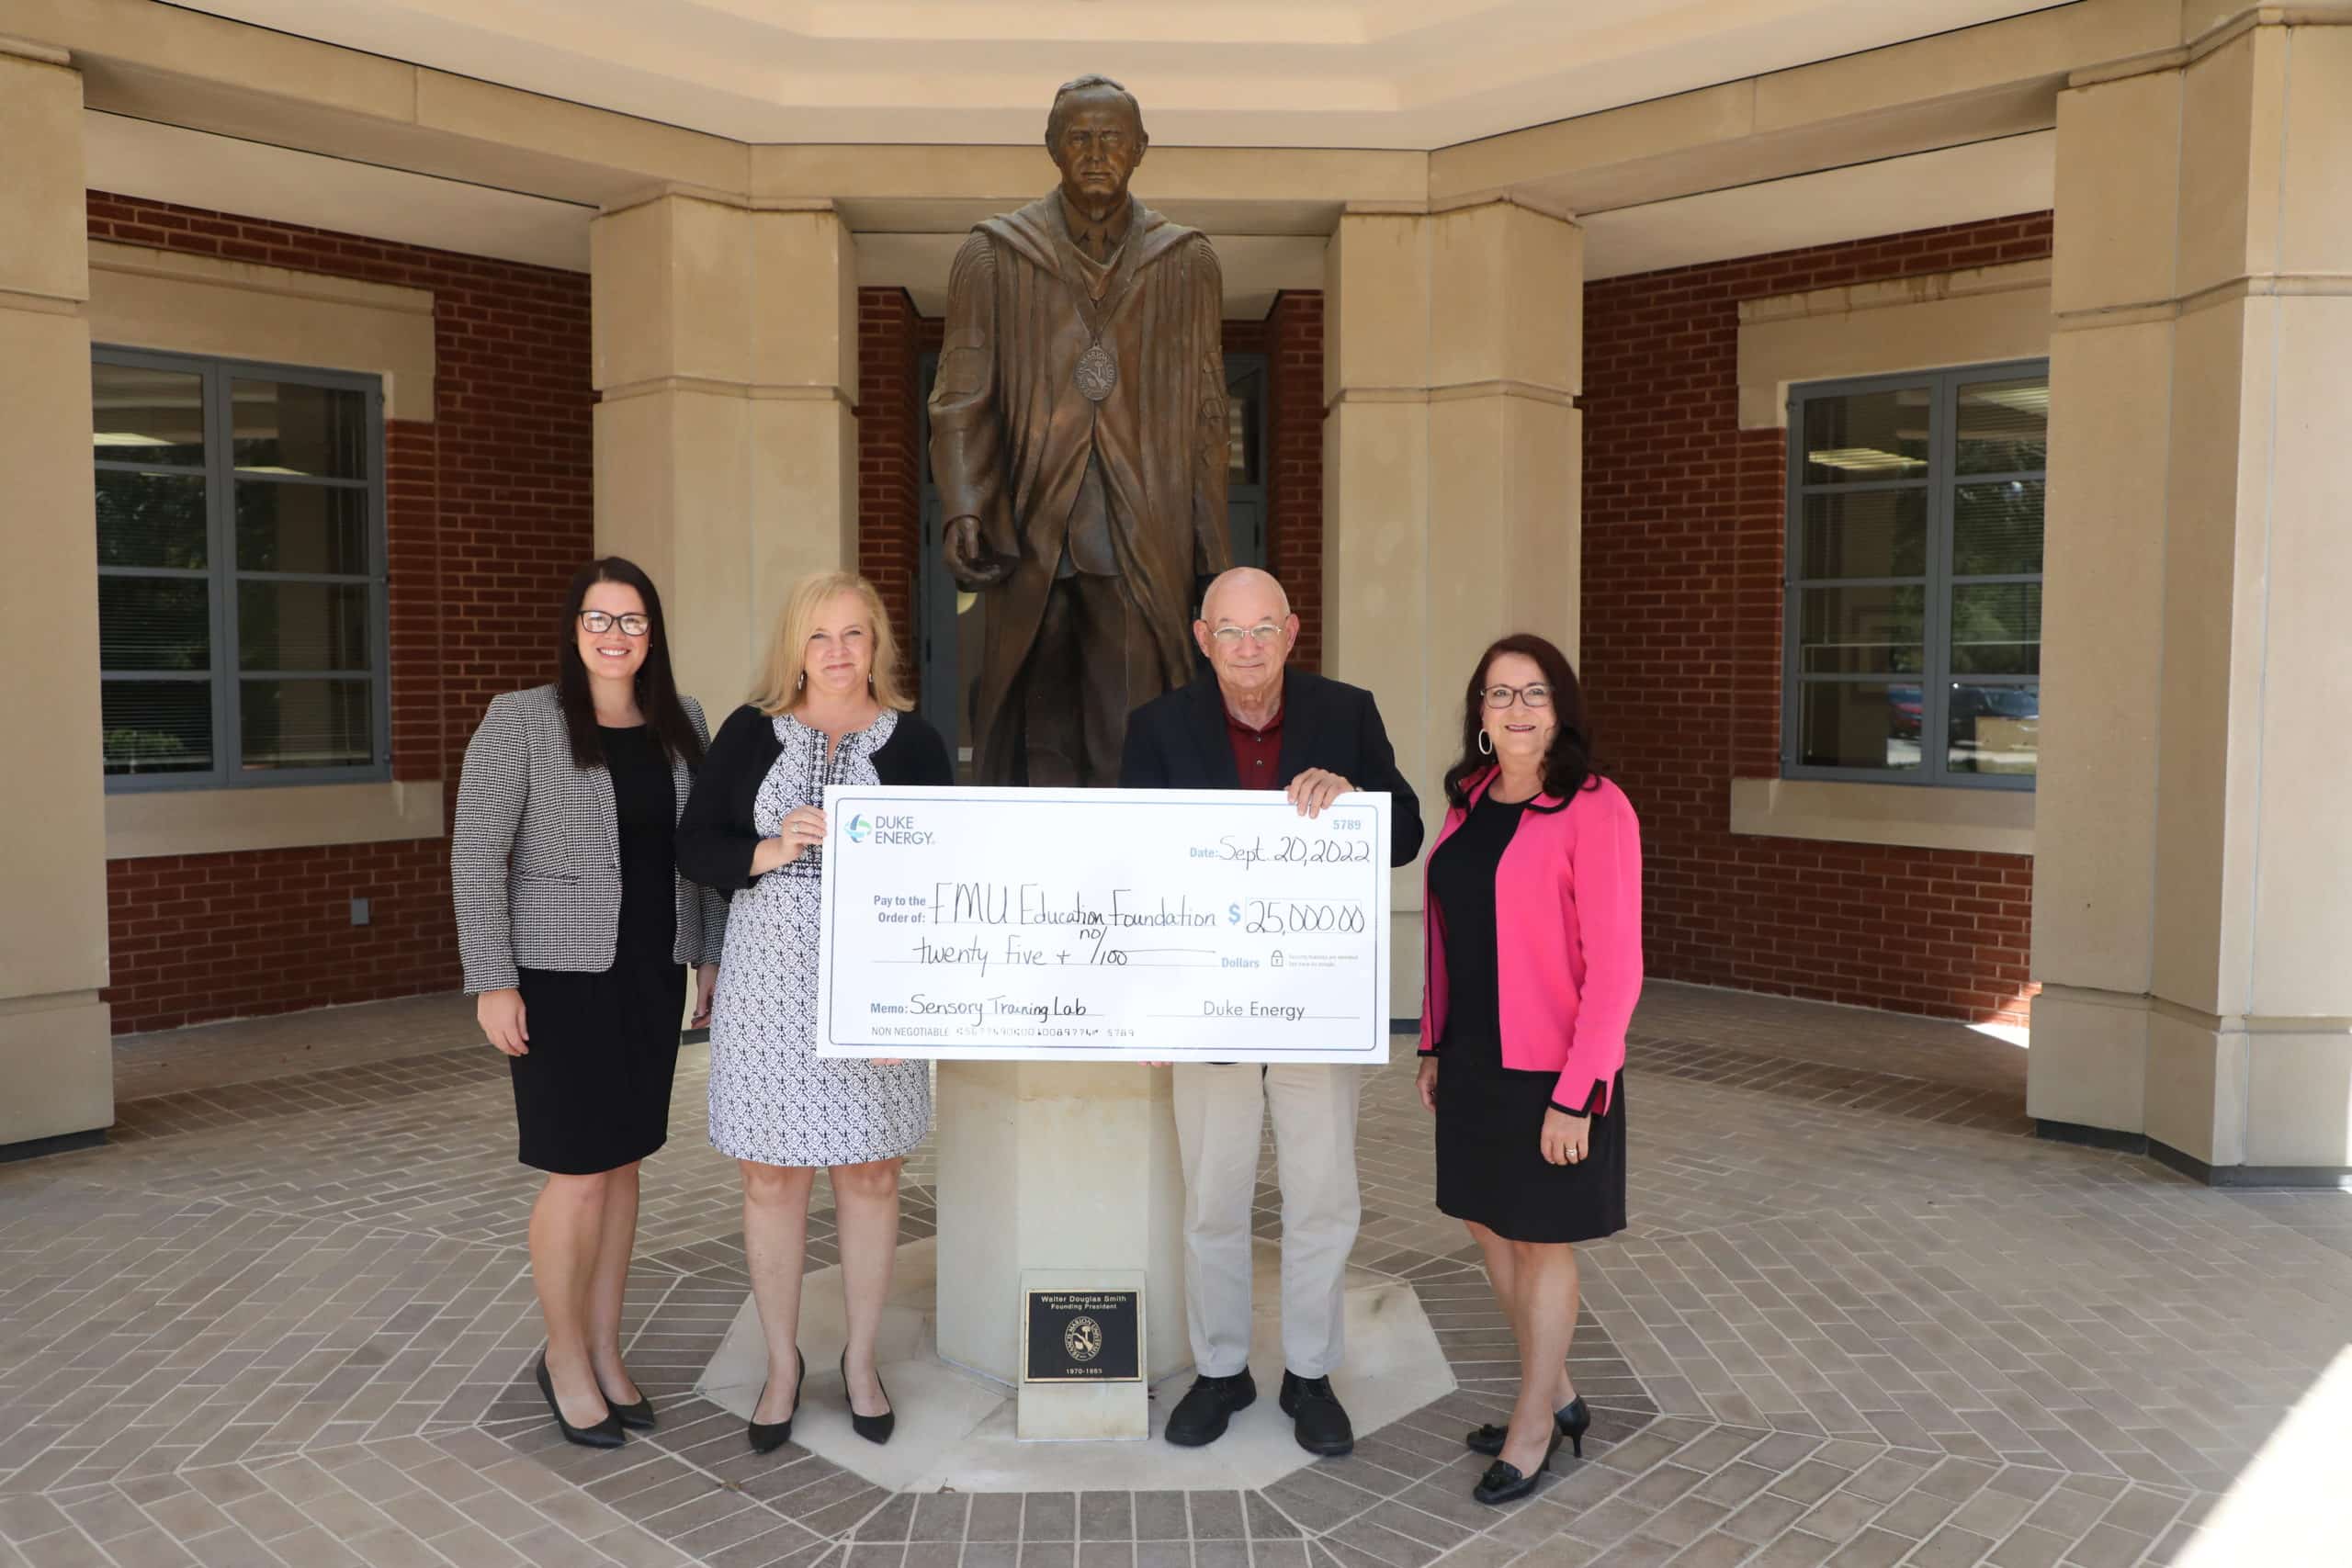 Duke Energy donates $25,000 to FMU sensory education lab